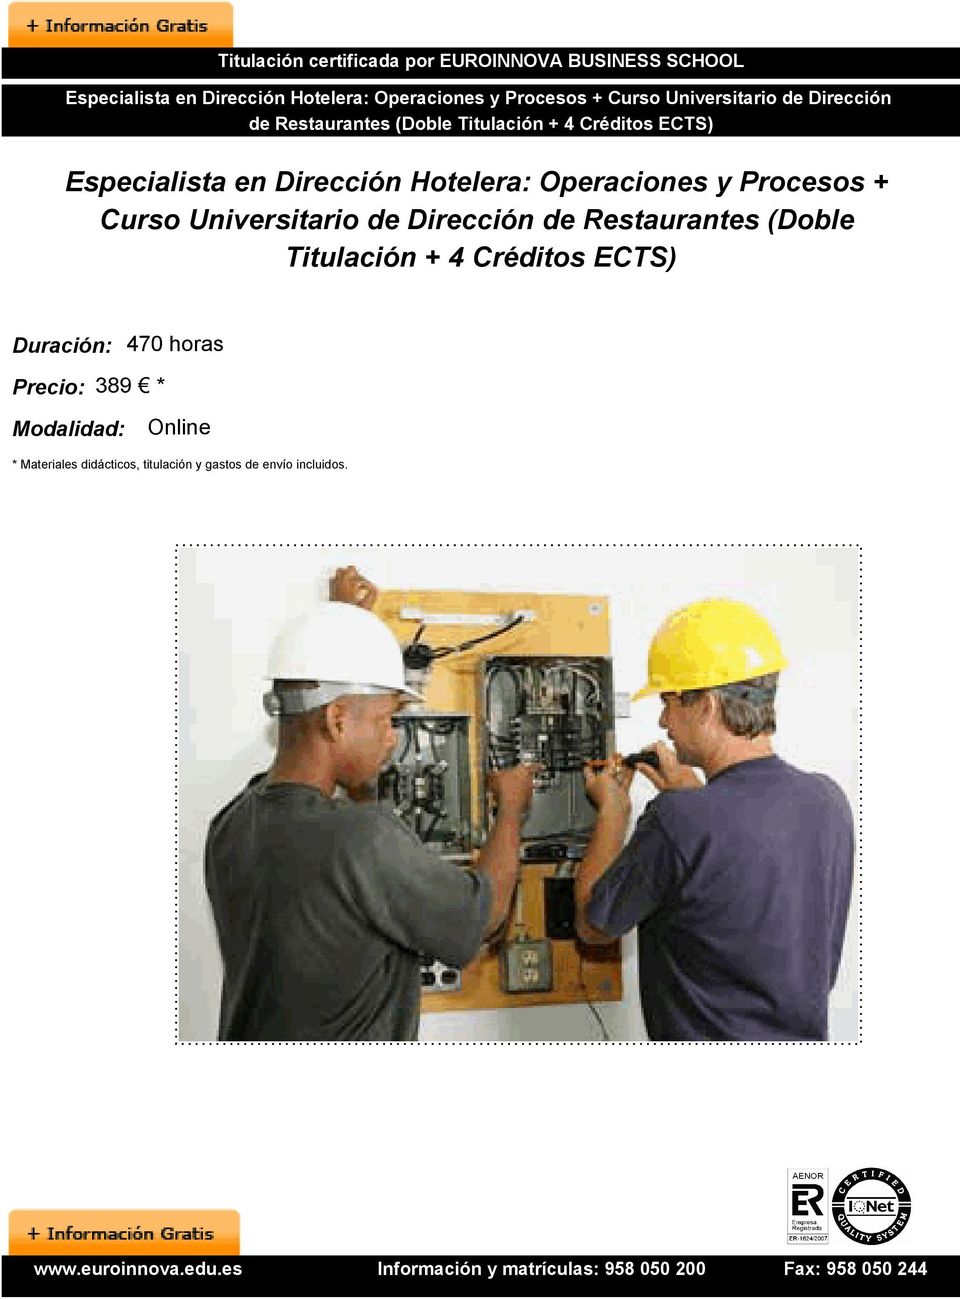 Procesos + Curso Universitario de Dirección de Restaurantes (Doble Titulación + 4 Créditos ECTS)